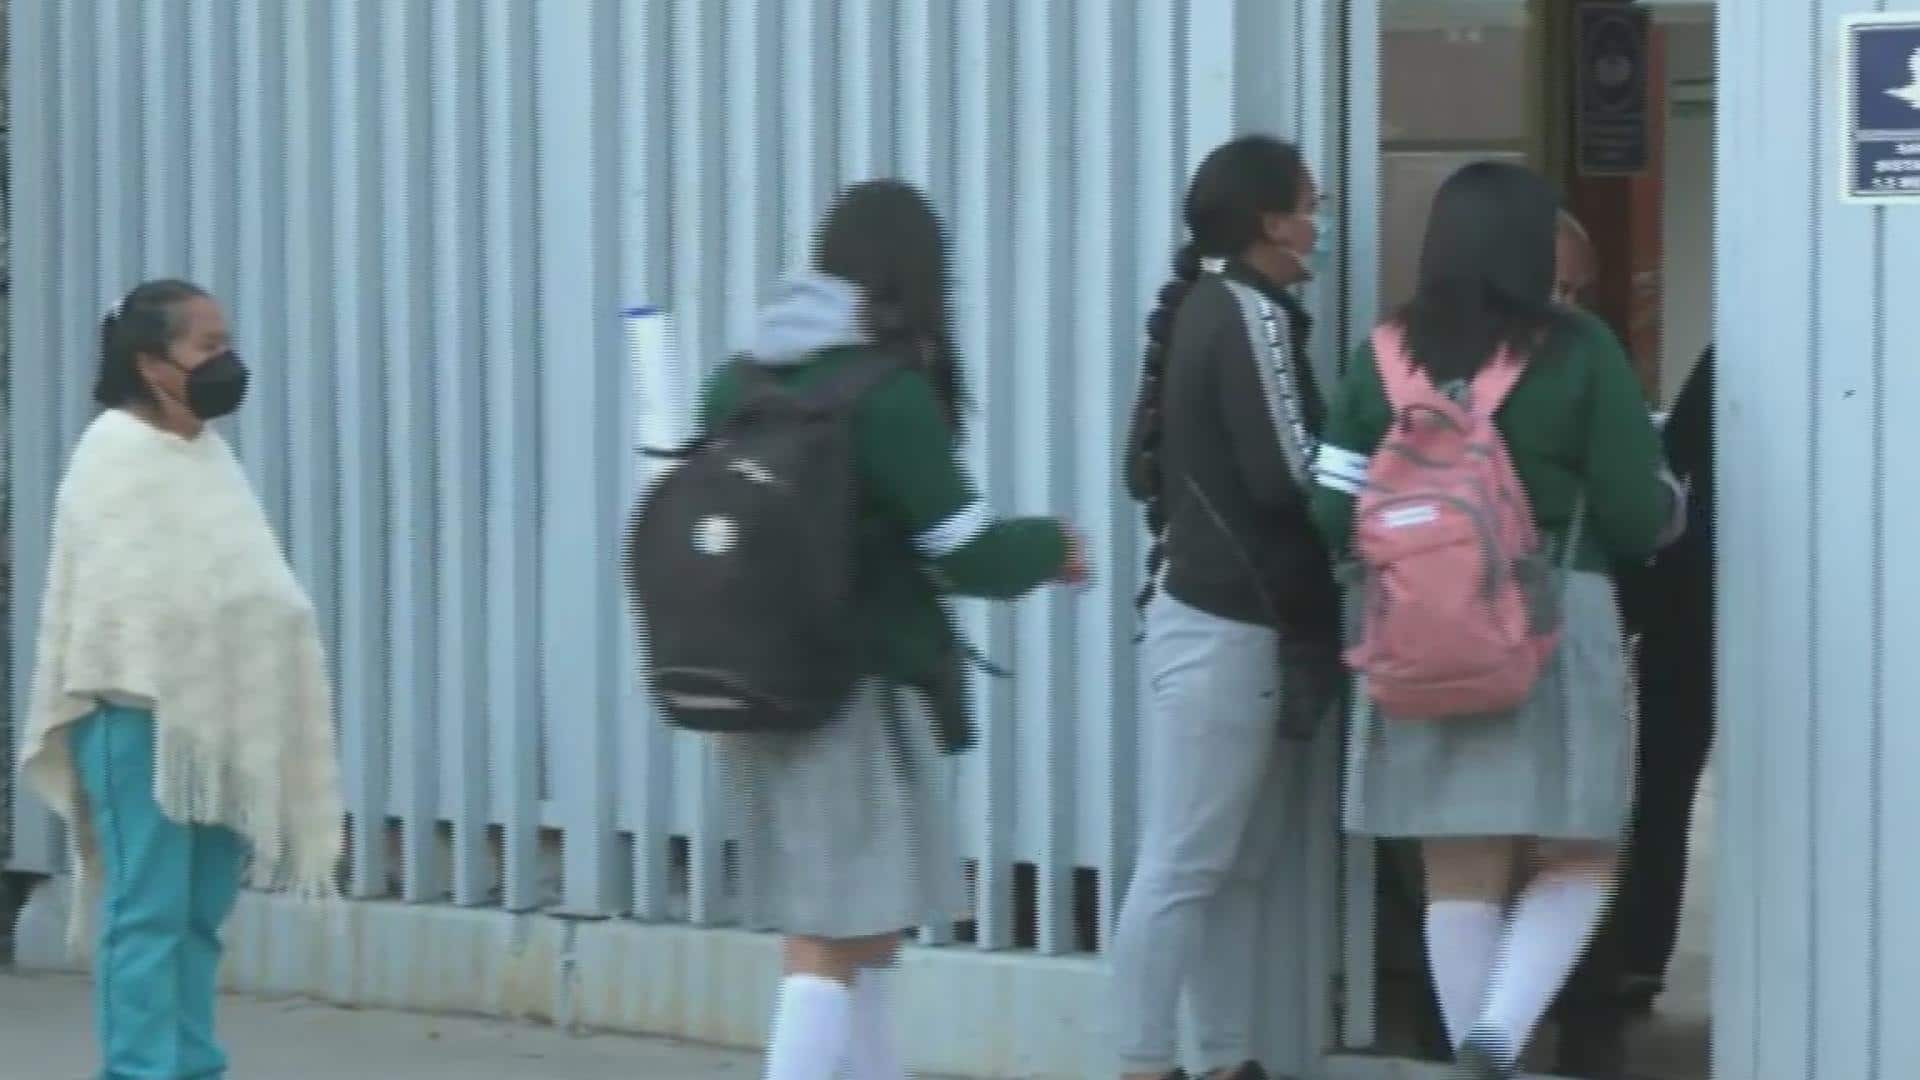 padres aprueban revision de mochilas en secundaria de iztapalapa tras disparo de estudiante